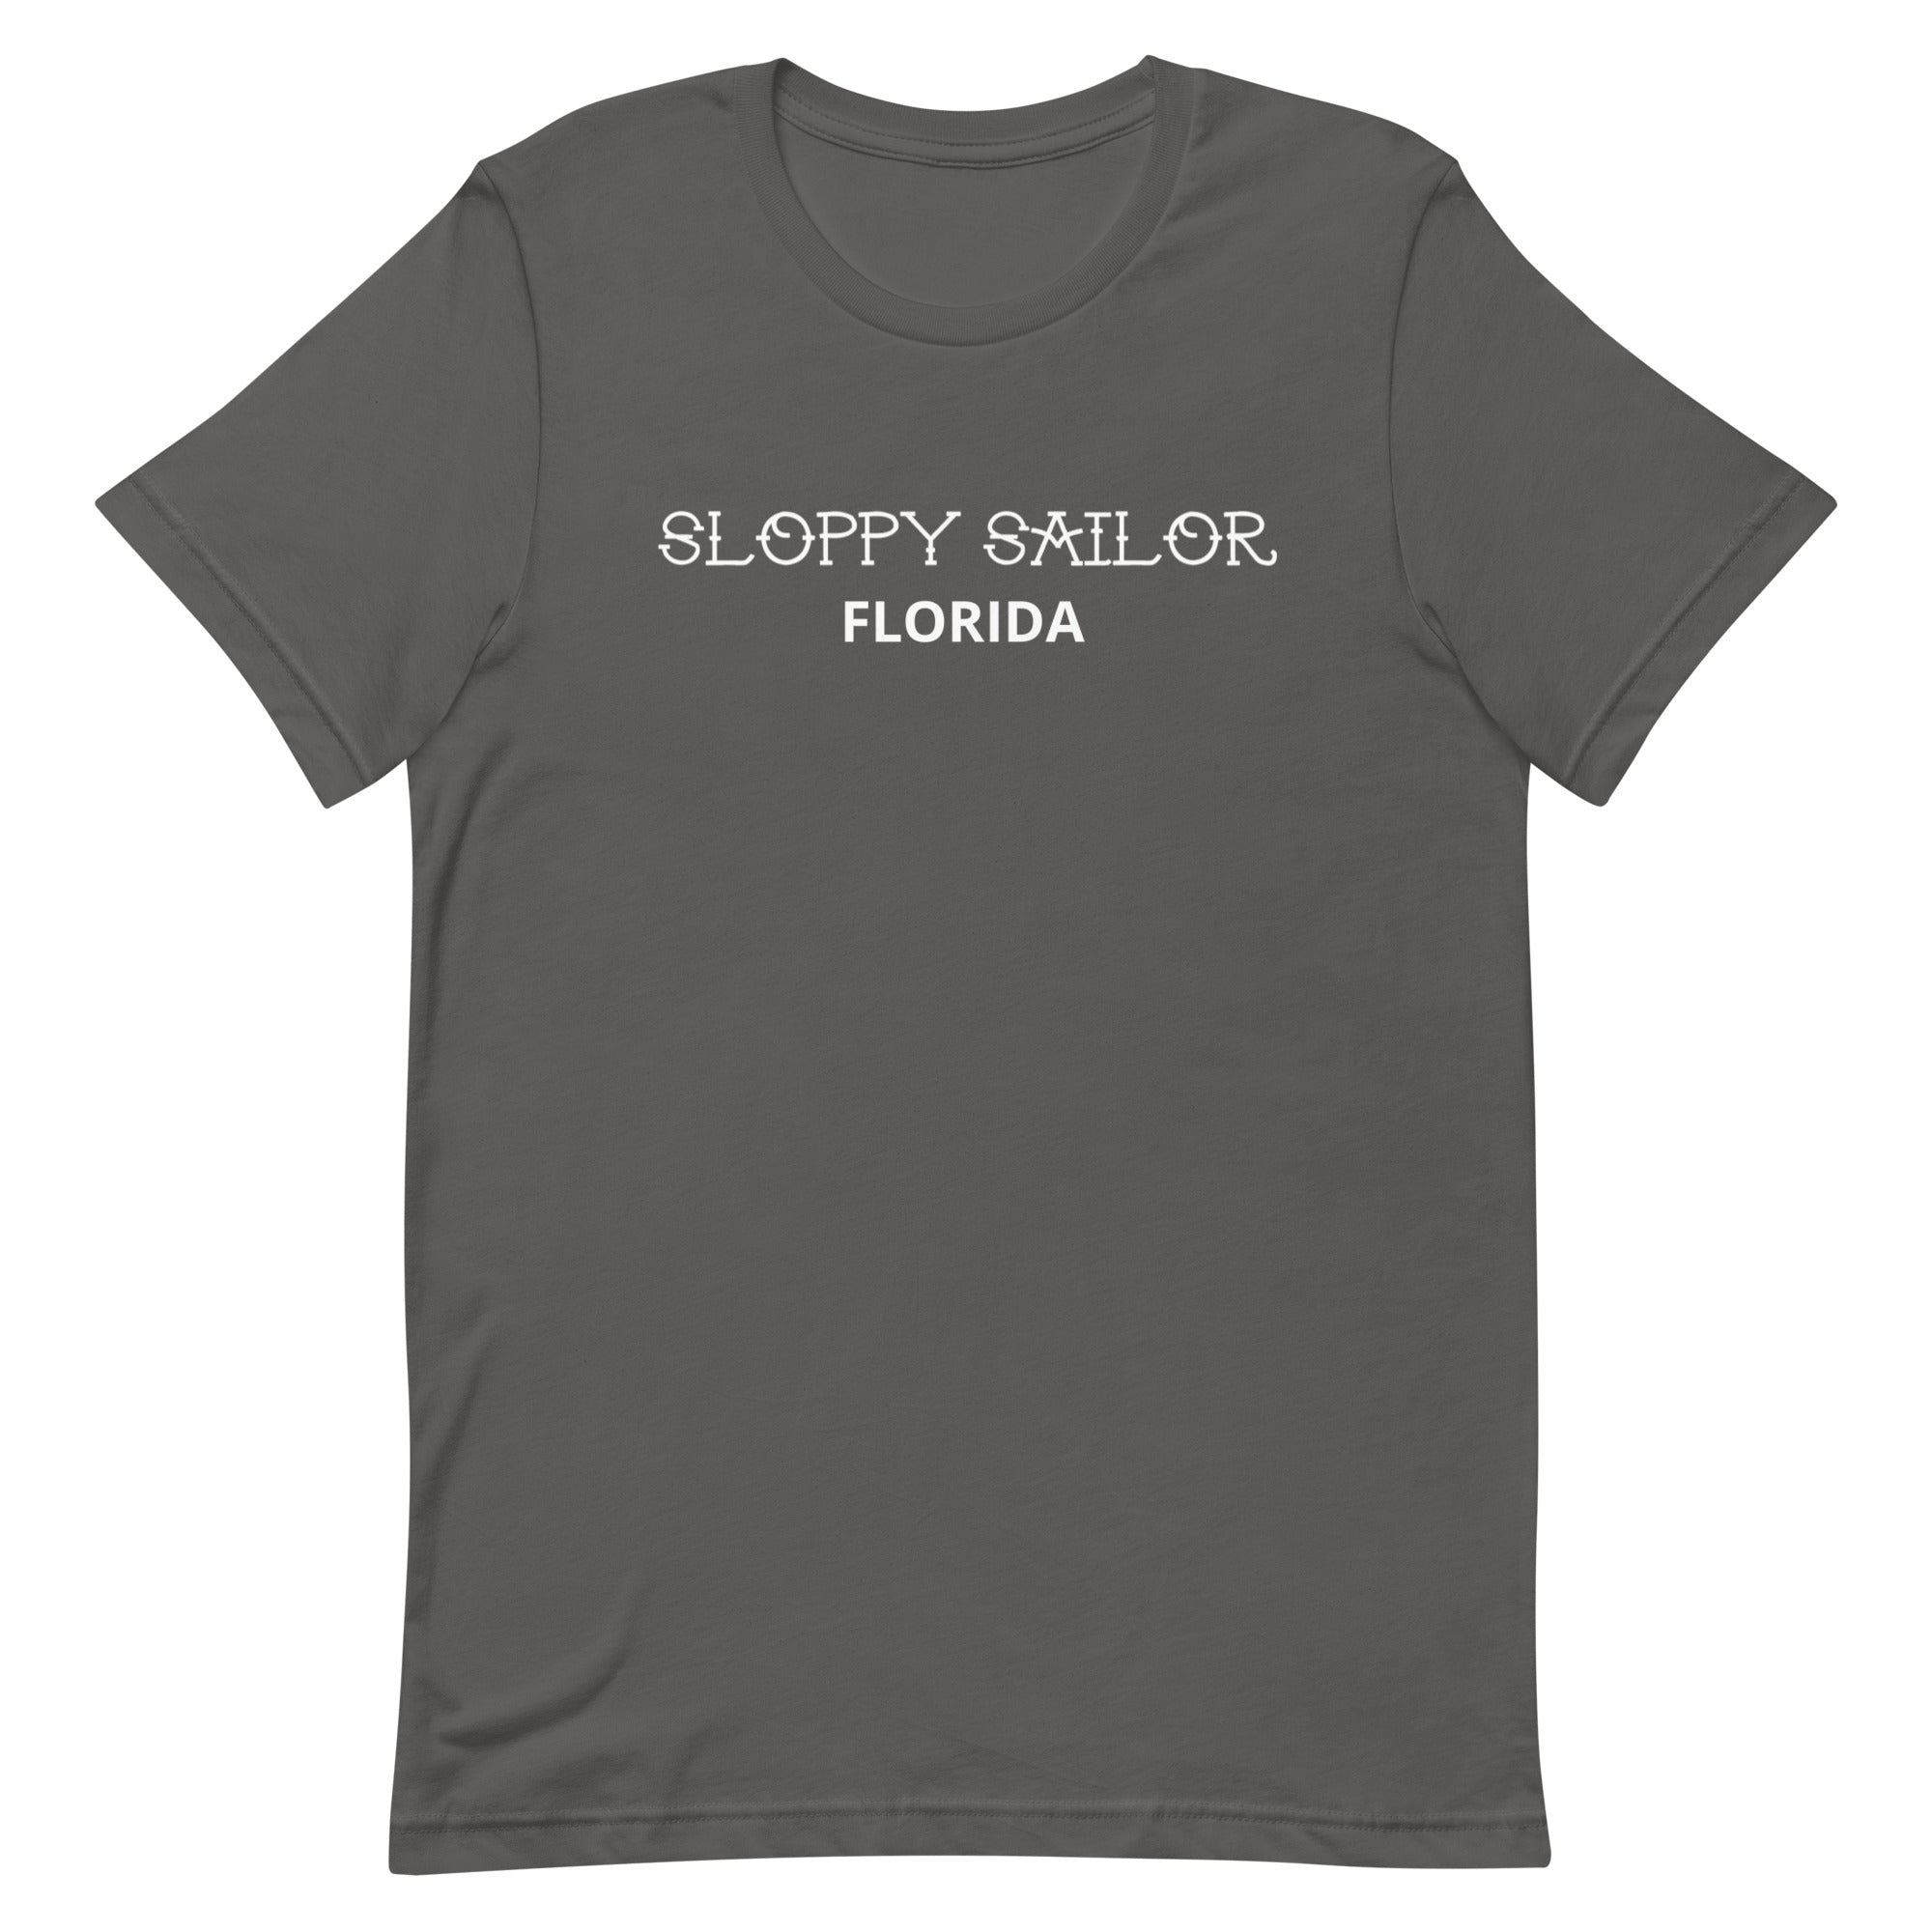 Florida T-Shirt